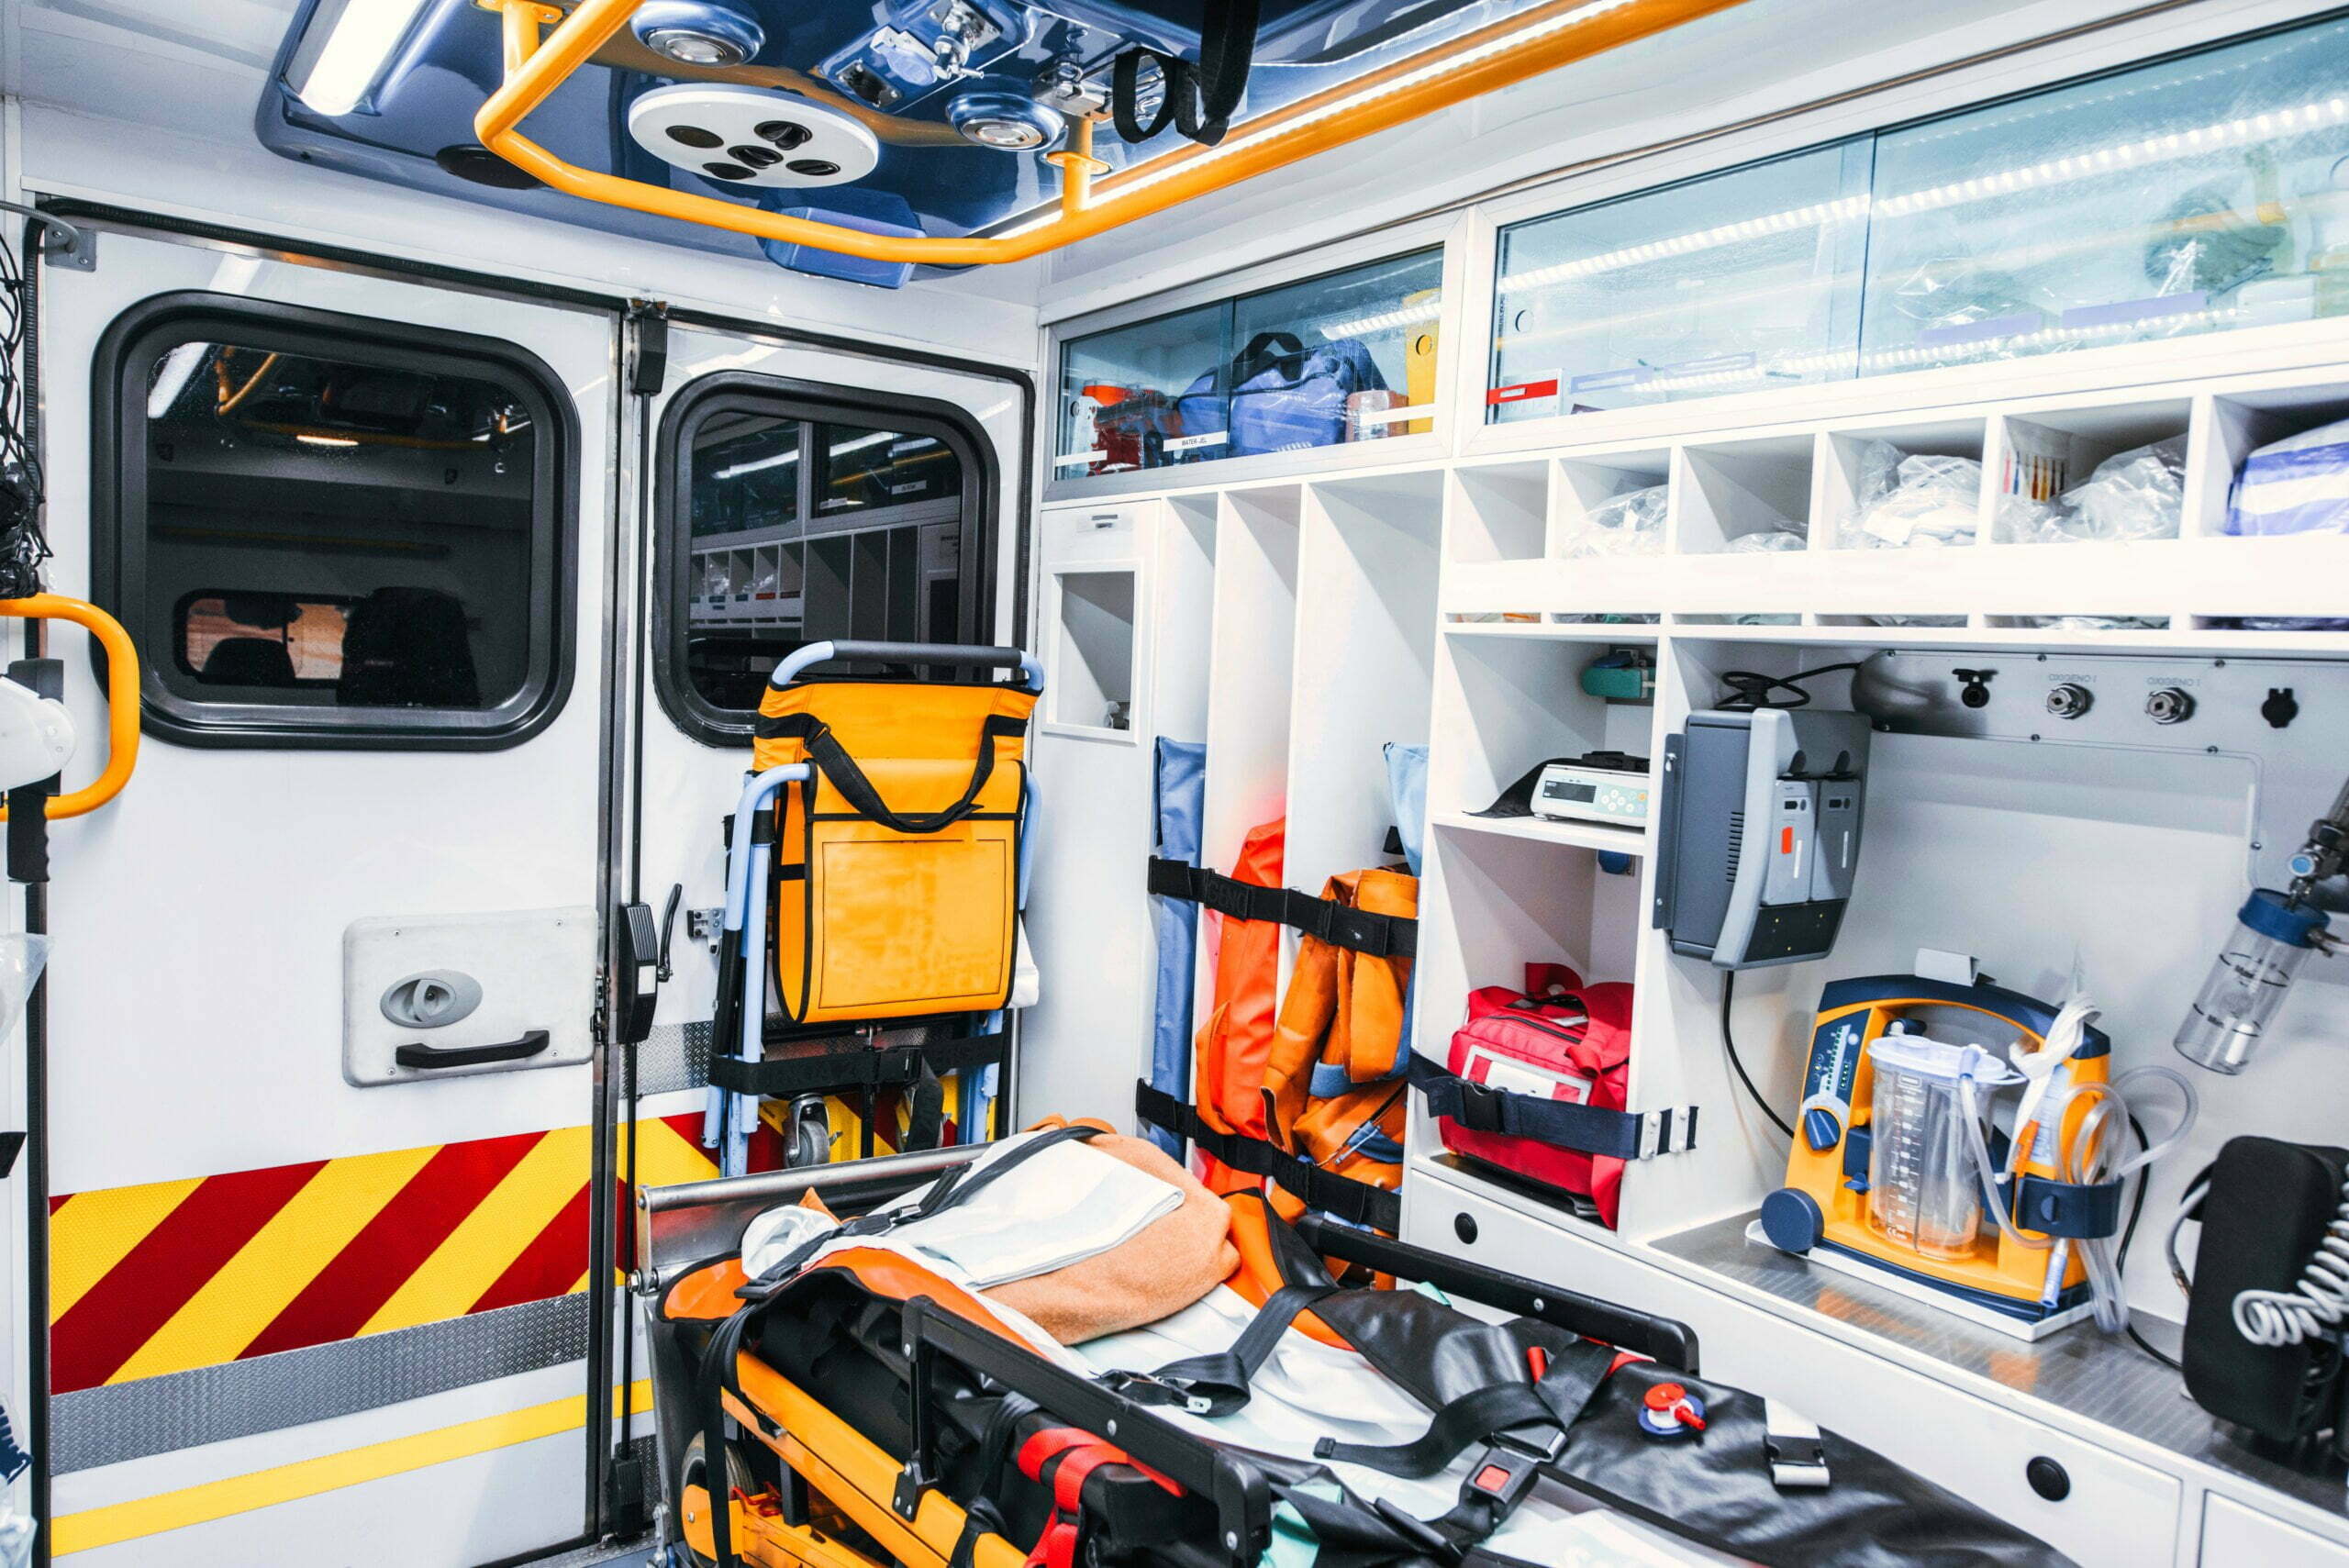 A Safer, Smarter Ambulance